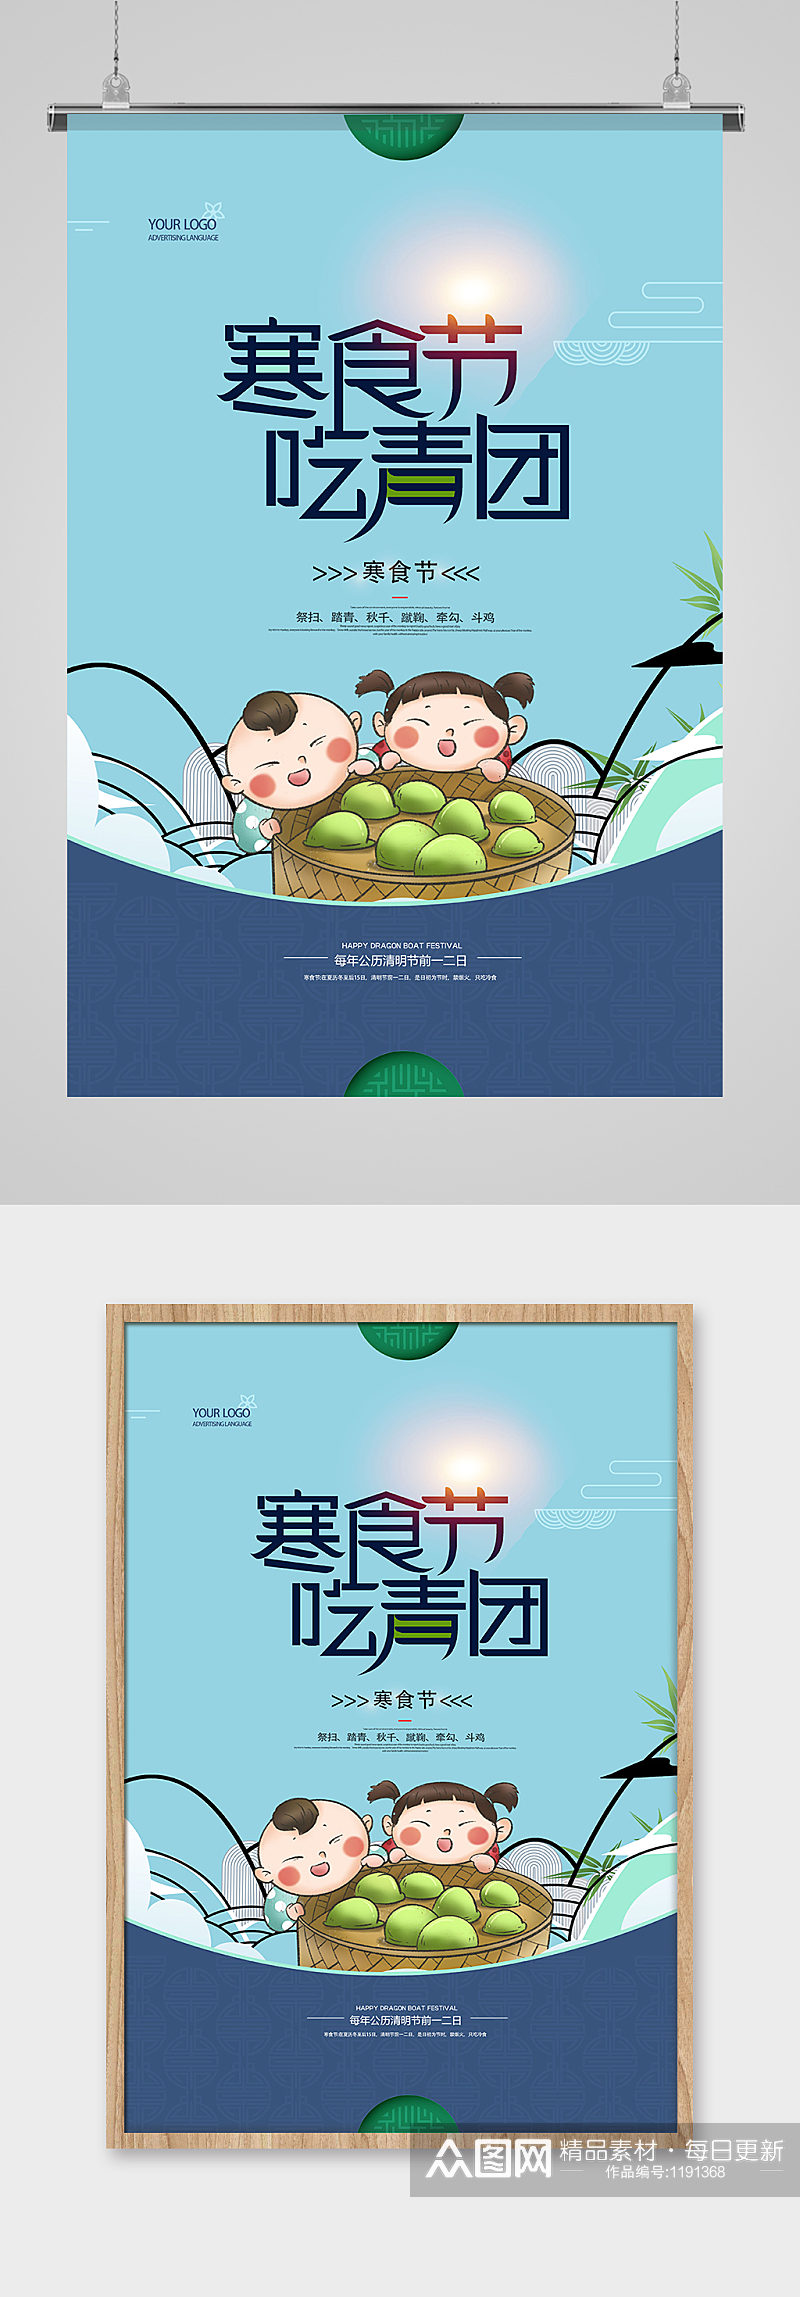 创意插画寒食节传统节日海报设计素材